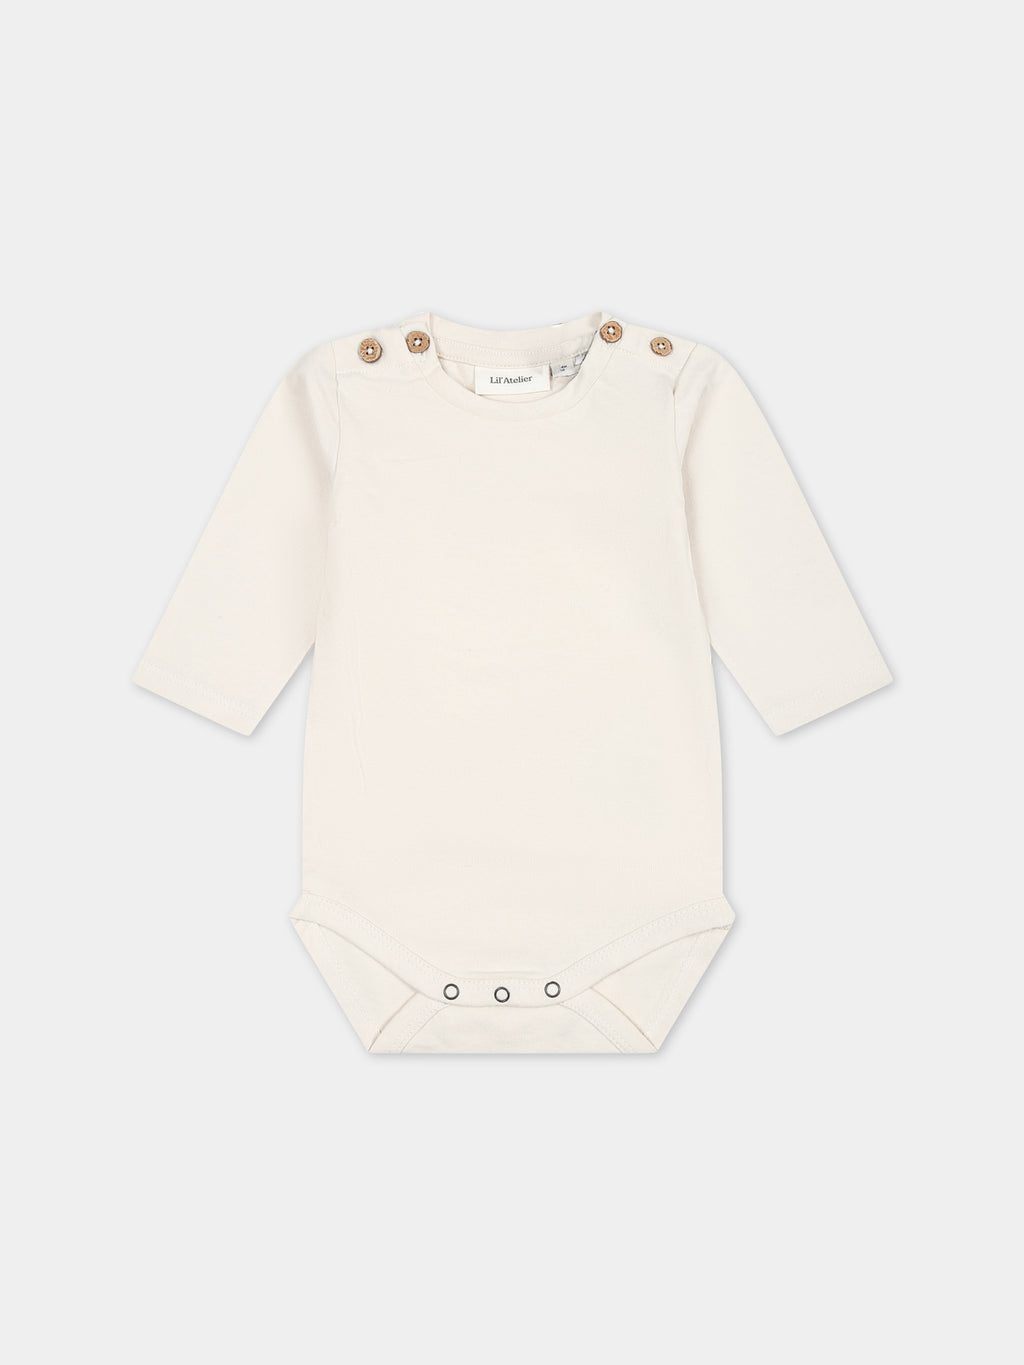 Ivory bodysuit for babykids with logo